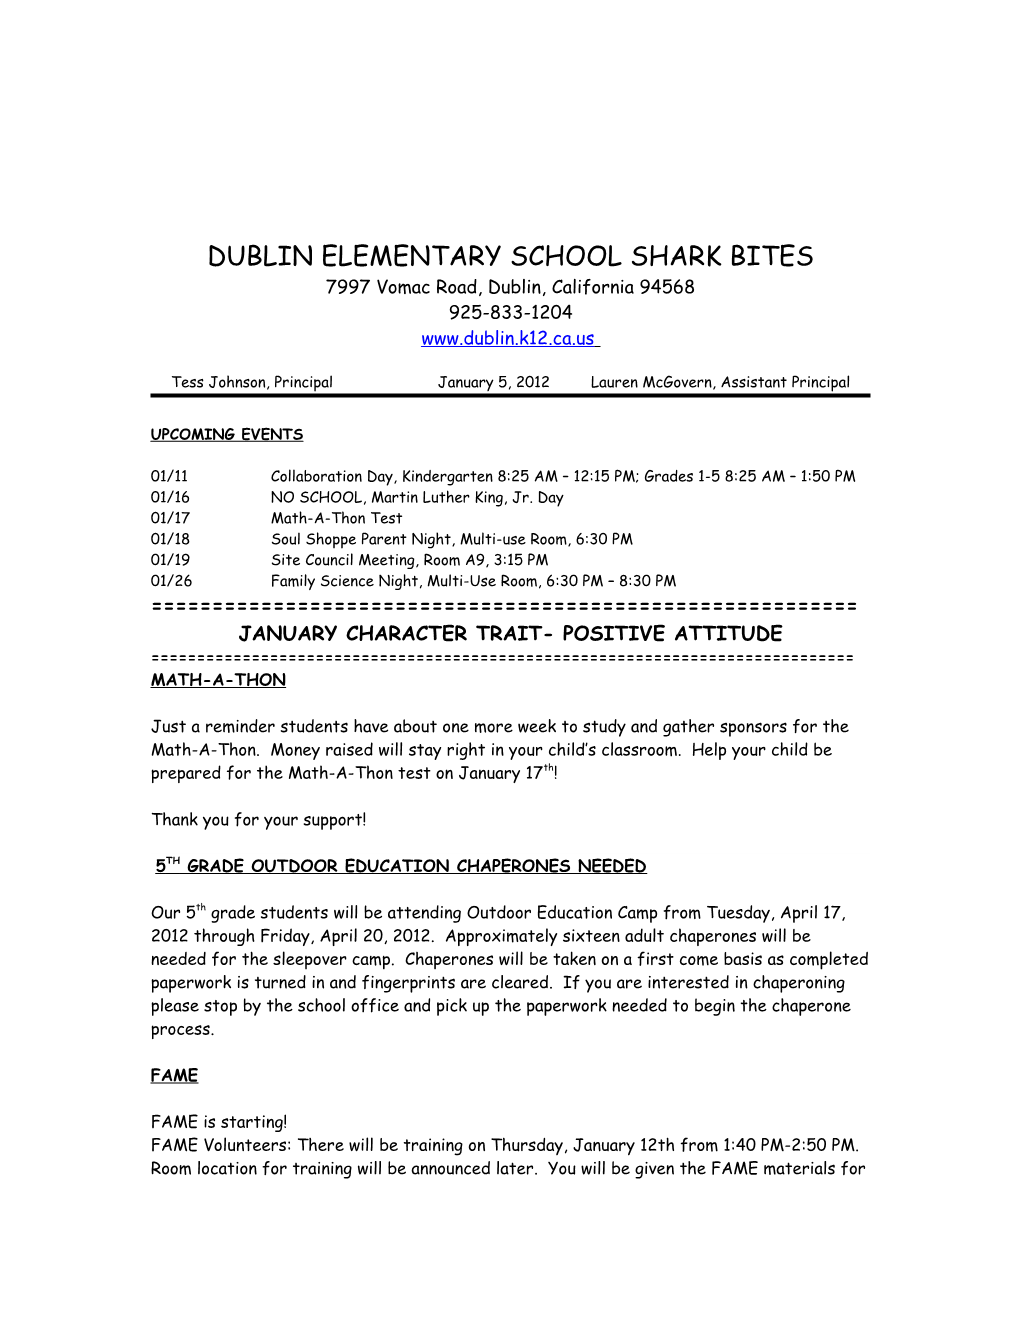 Dublinelementary School Shark Bites